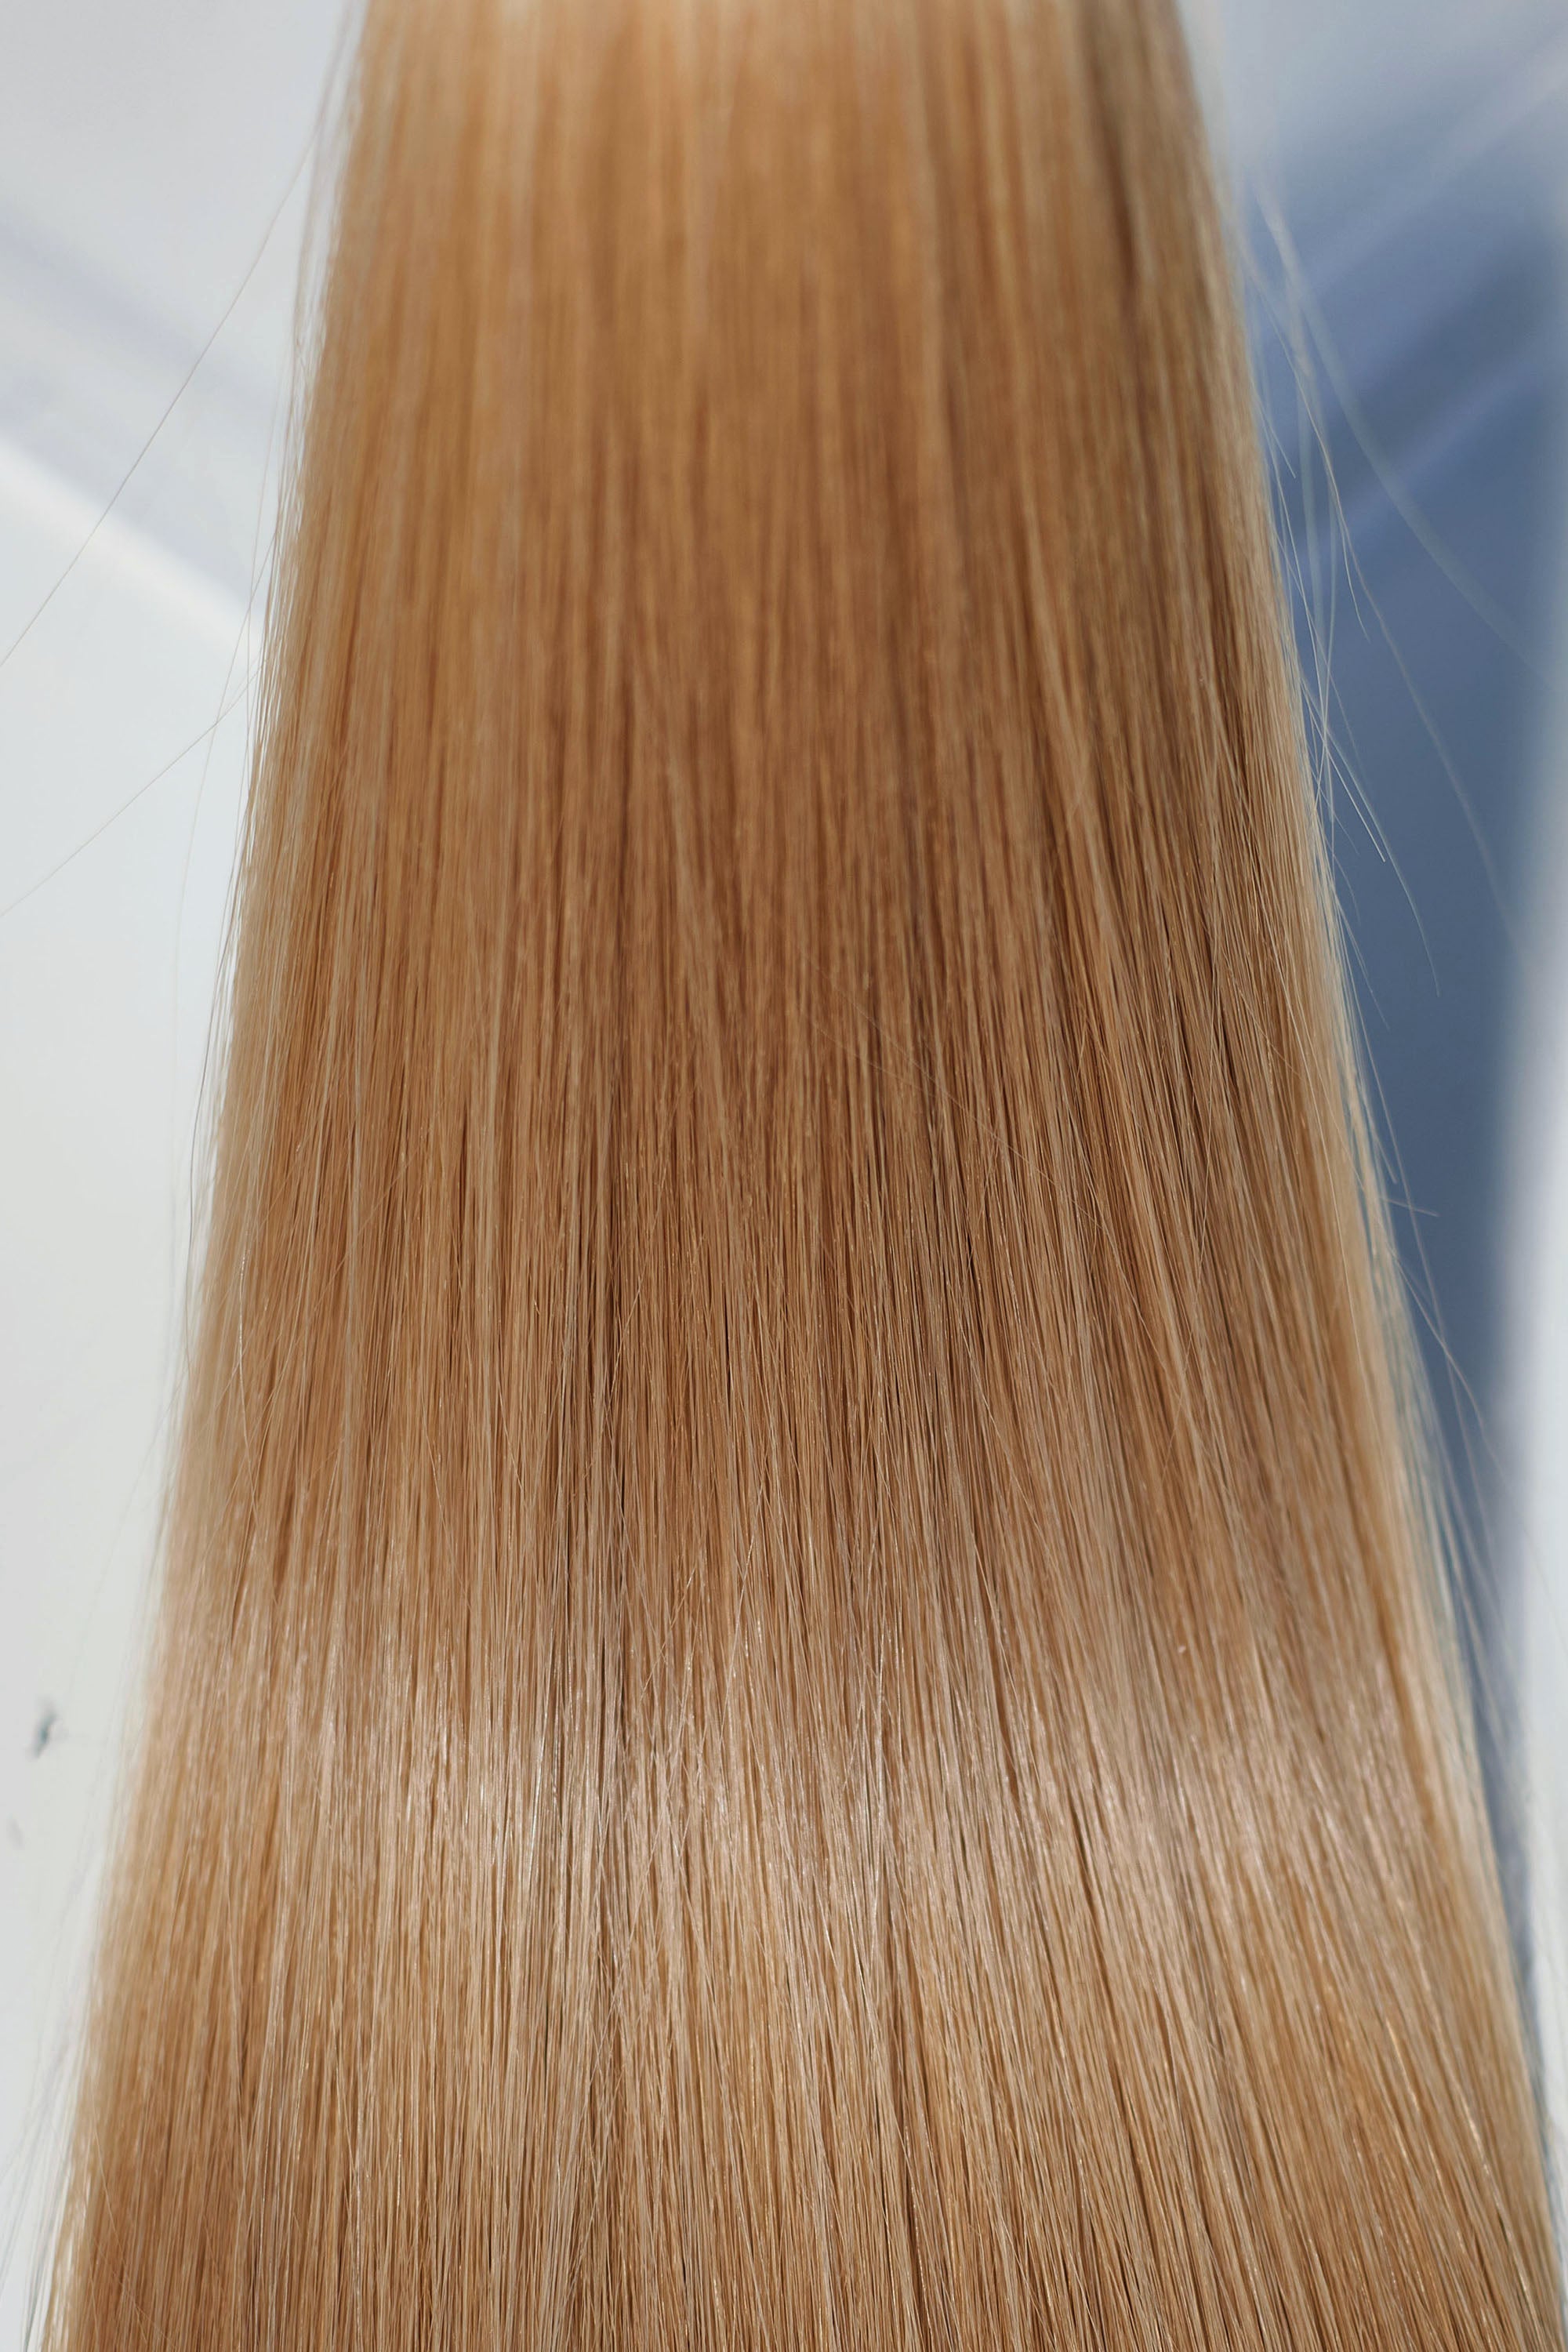 Behair professional Bulk hair "Premium" 16" (40cm) Natural Straight Gold Sand #18 - 25g hair extensions